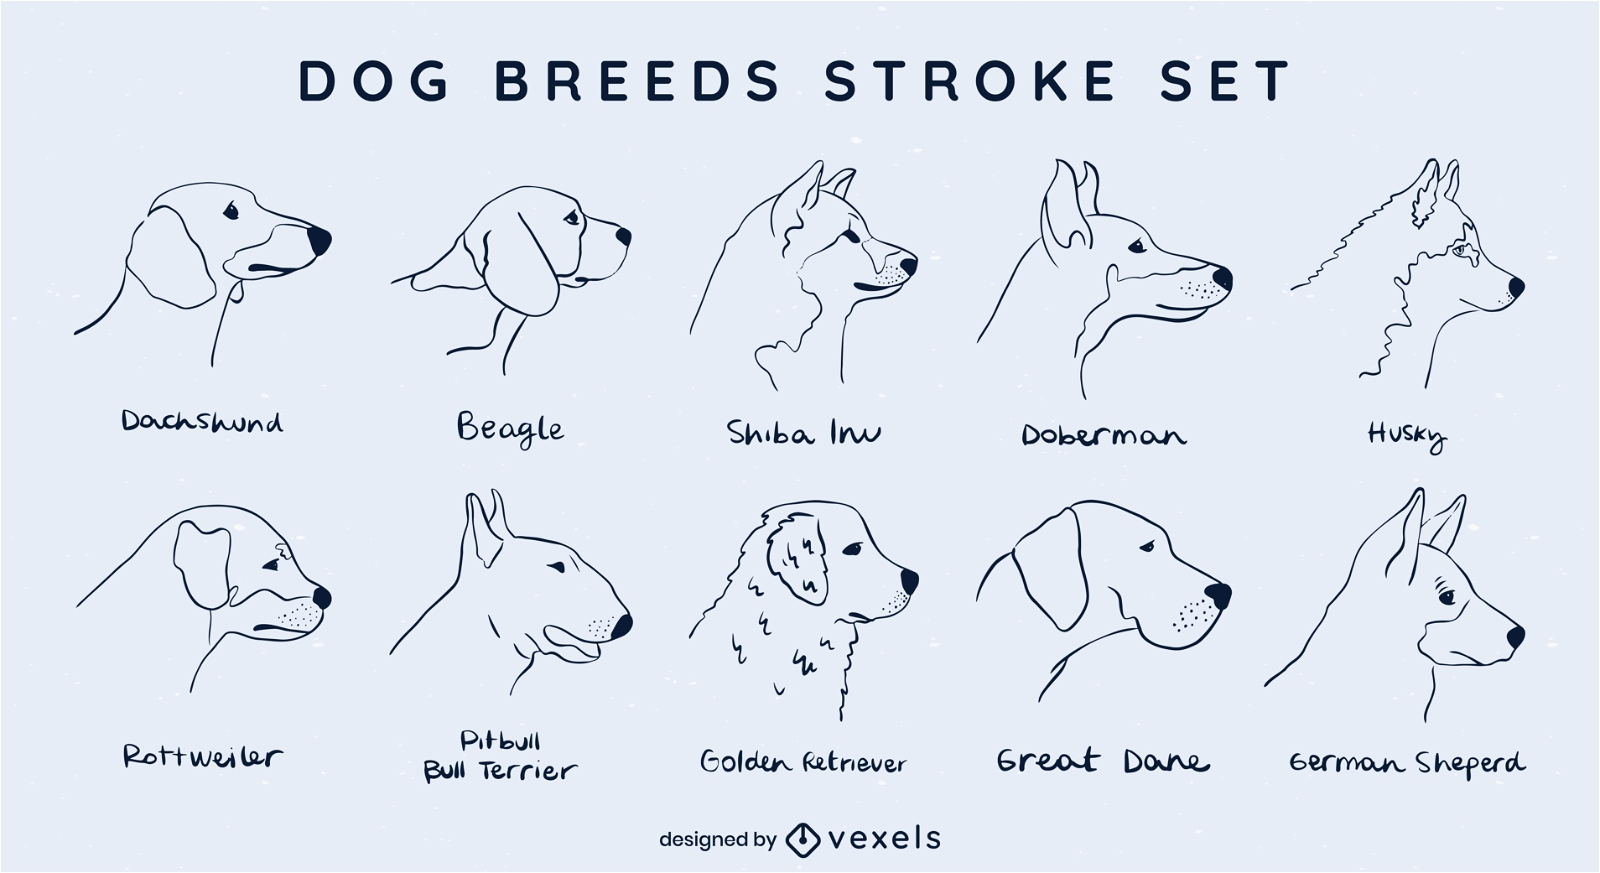 Dog breeds stroke set